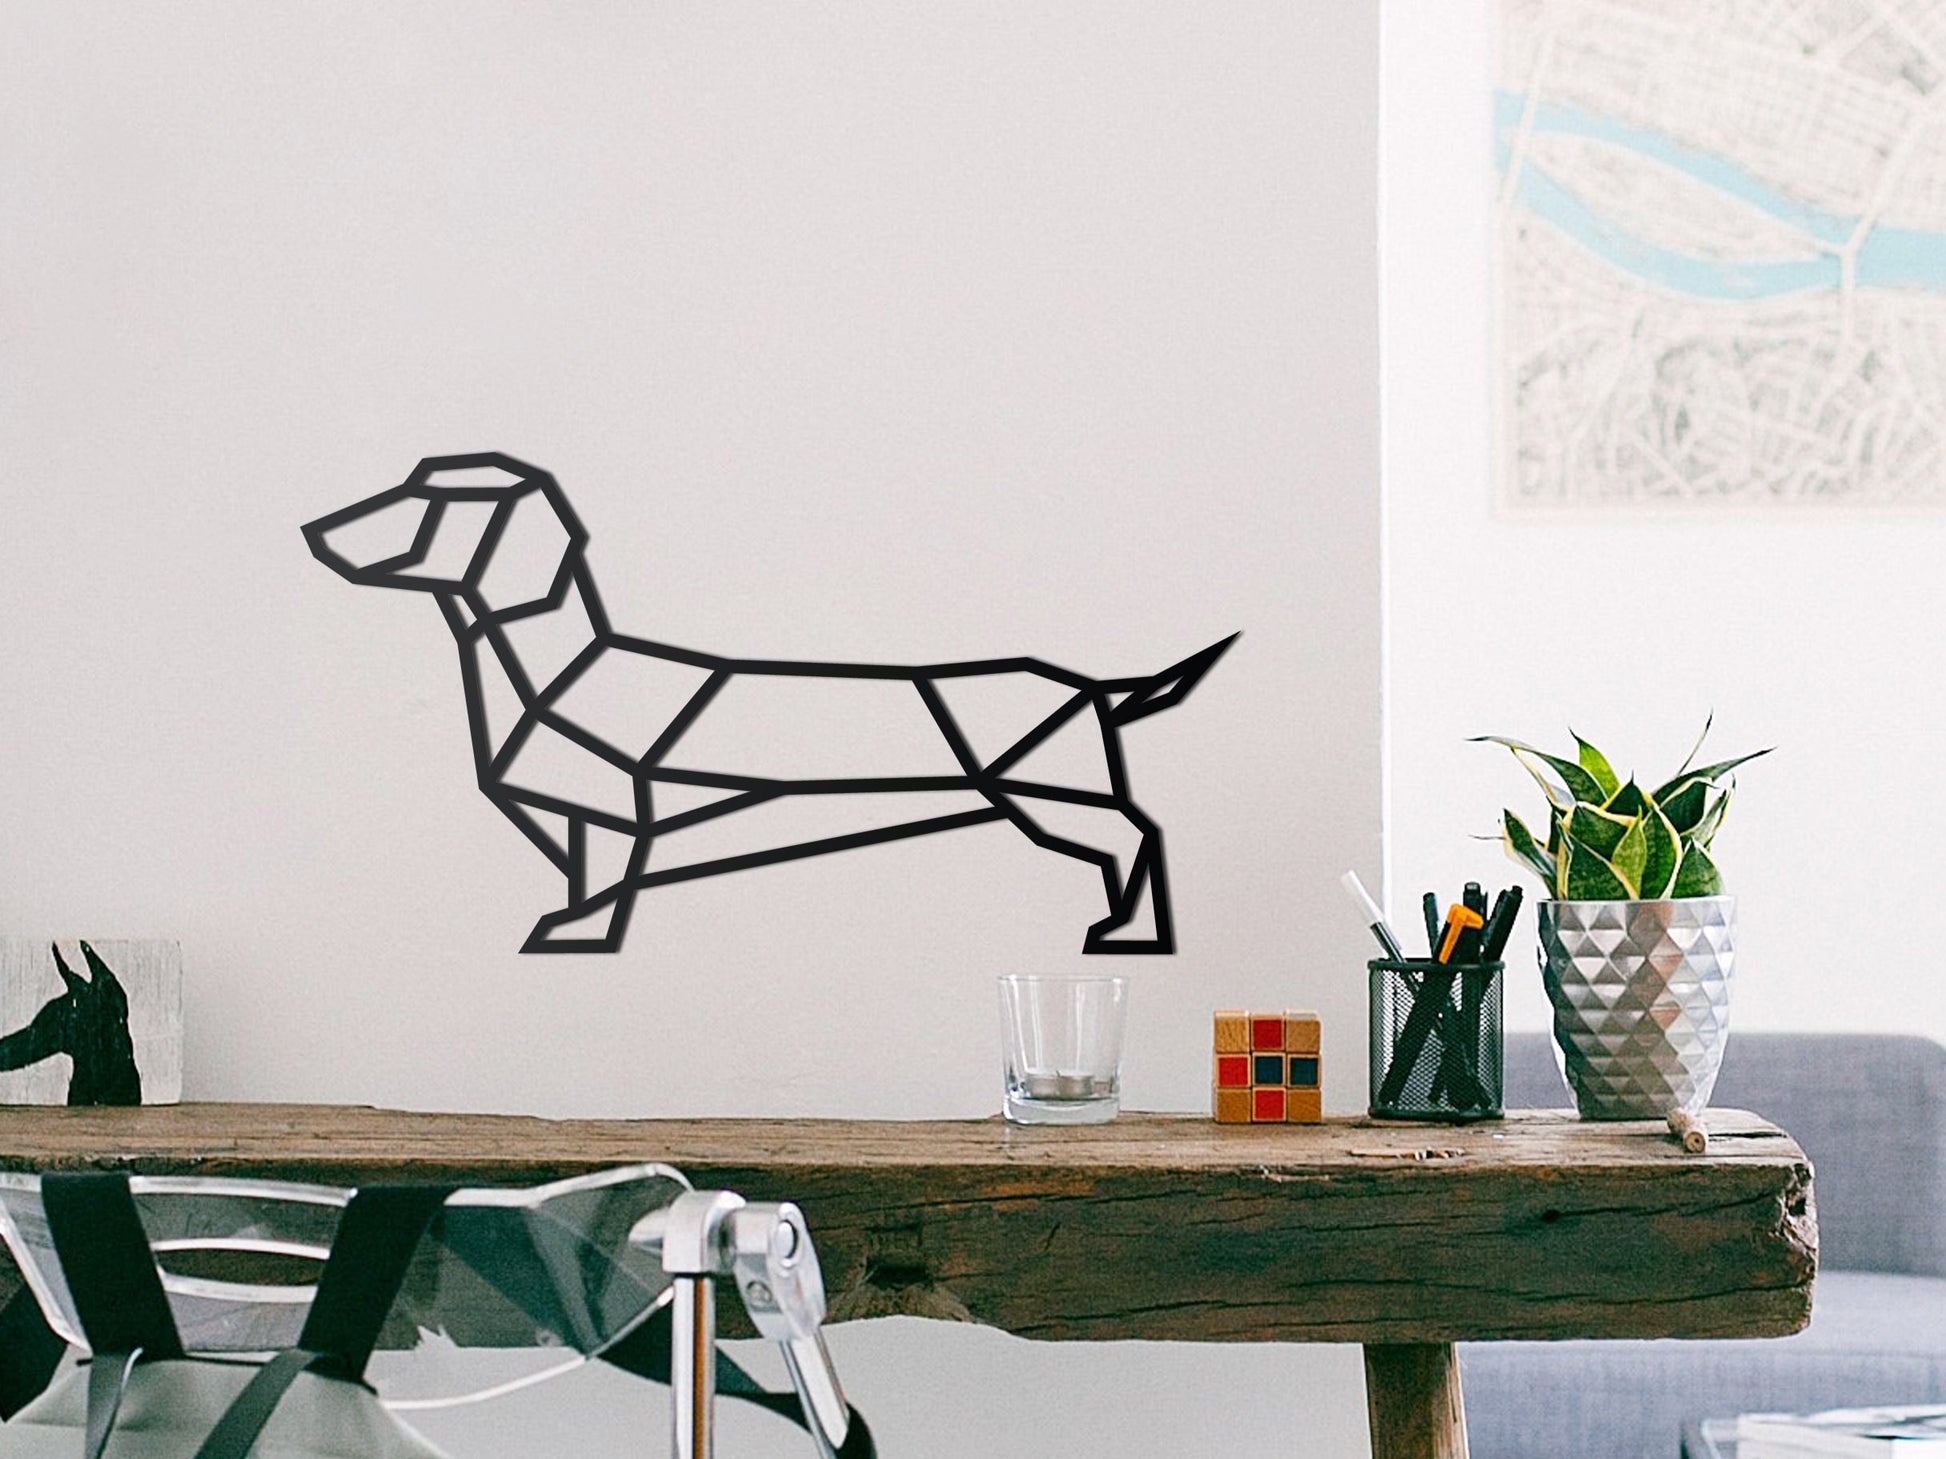 Wooden wall decoration - Geometric Wienerdog - Sausage dog - Dachshund –  SOLID IDEA